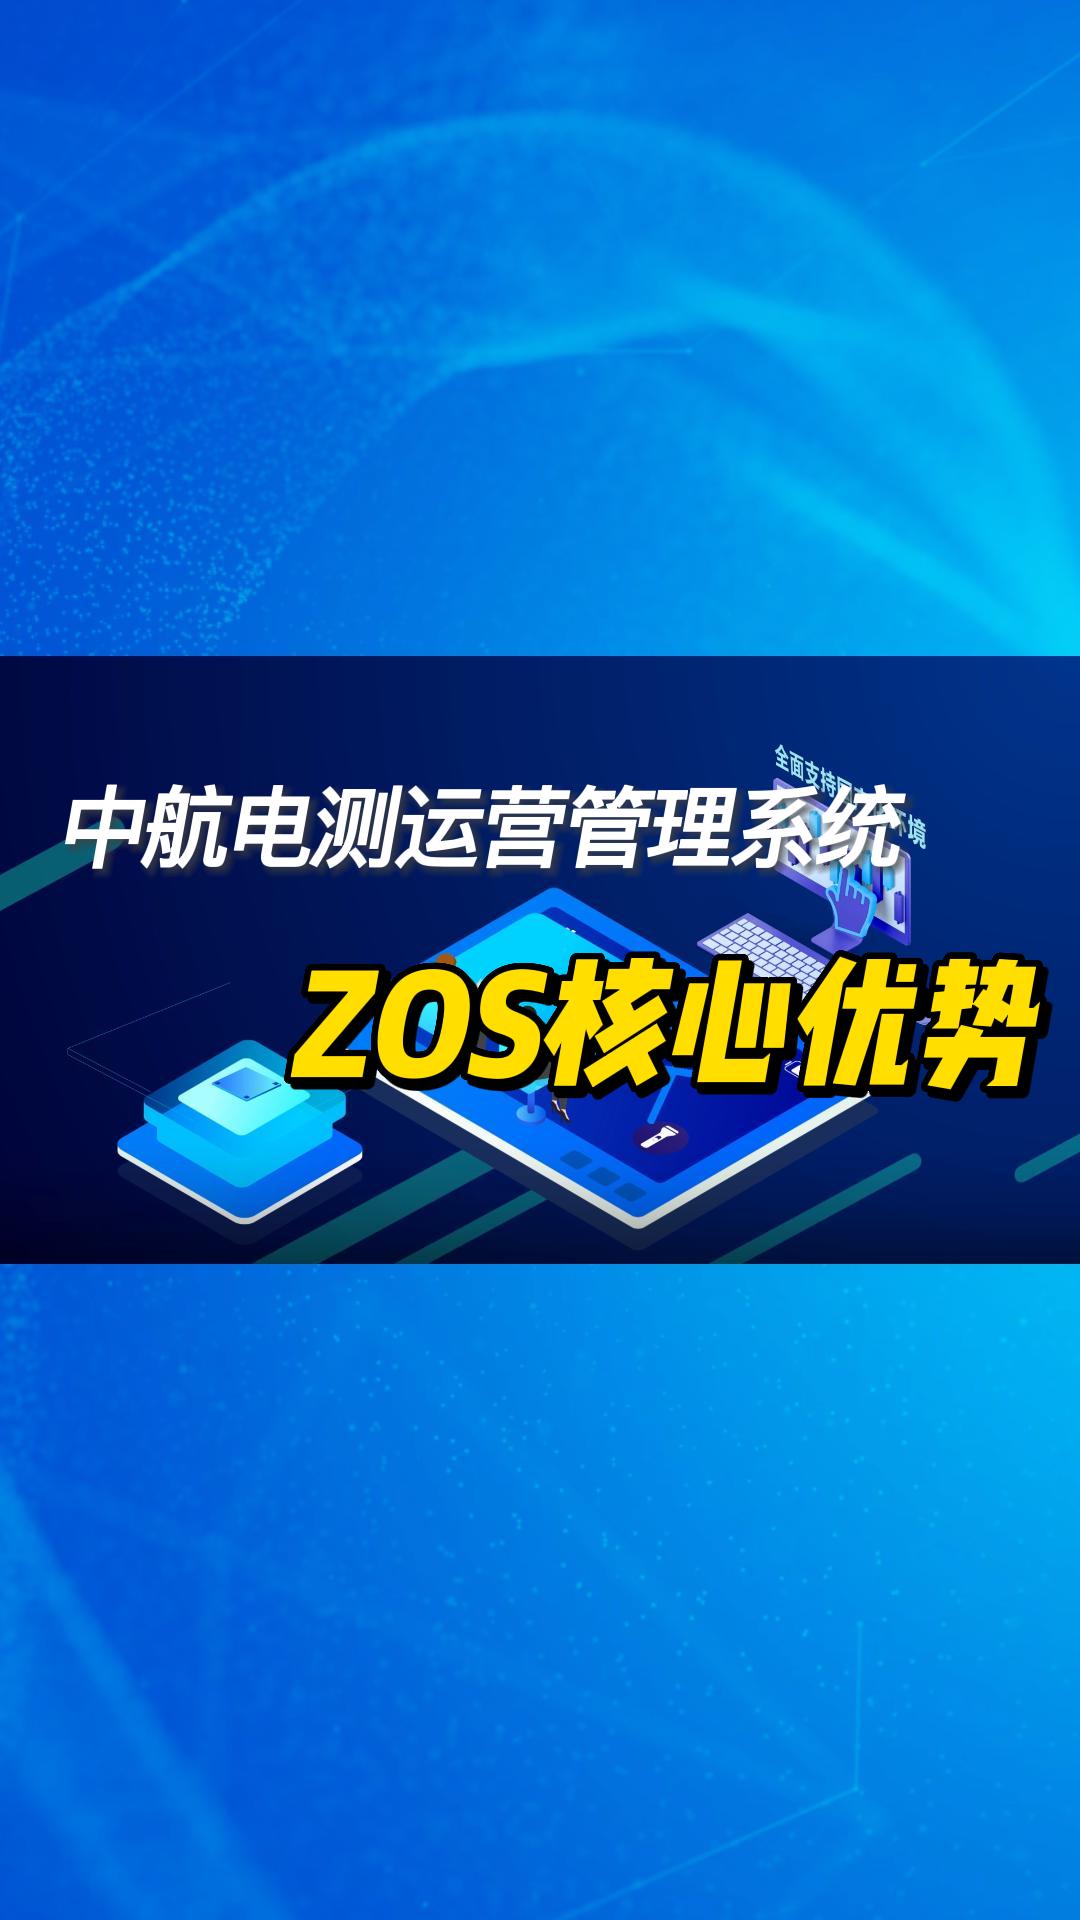 中航电测ZOS管理系统 #数字化转型 